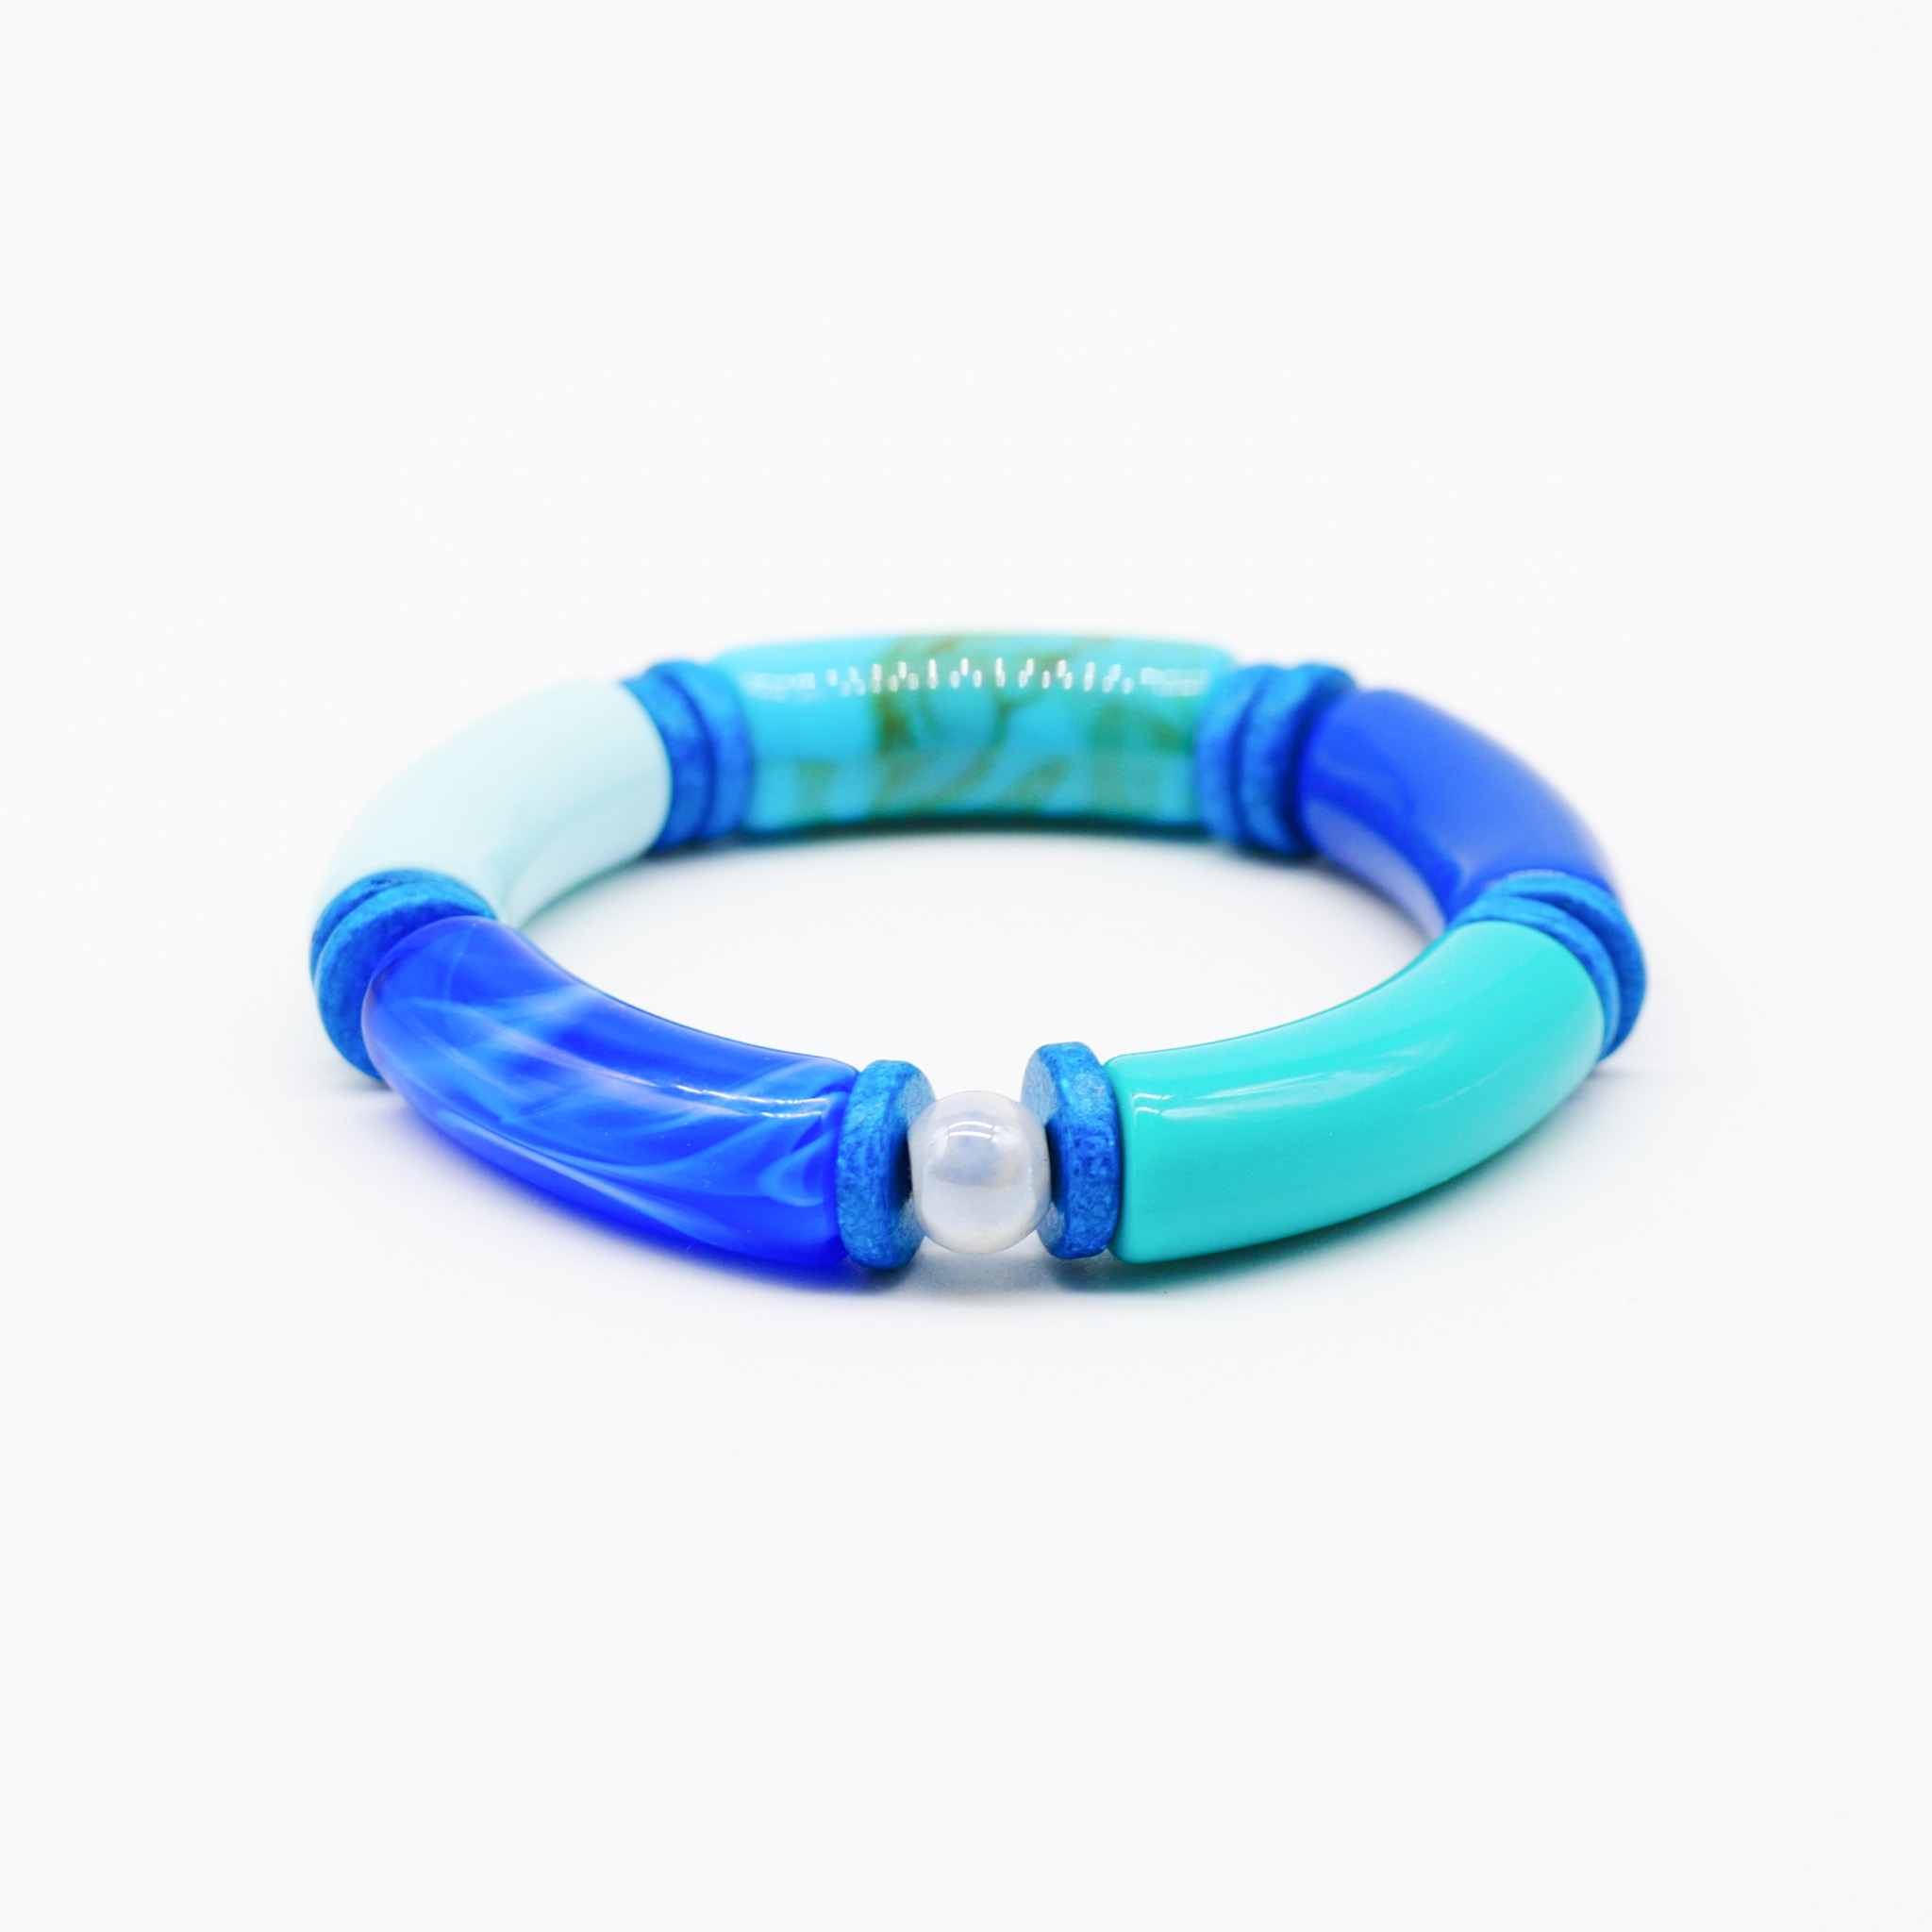 Armband "Tube" auf Gummi, gebogene Kunststoffelemente + Keramik, blau